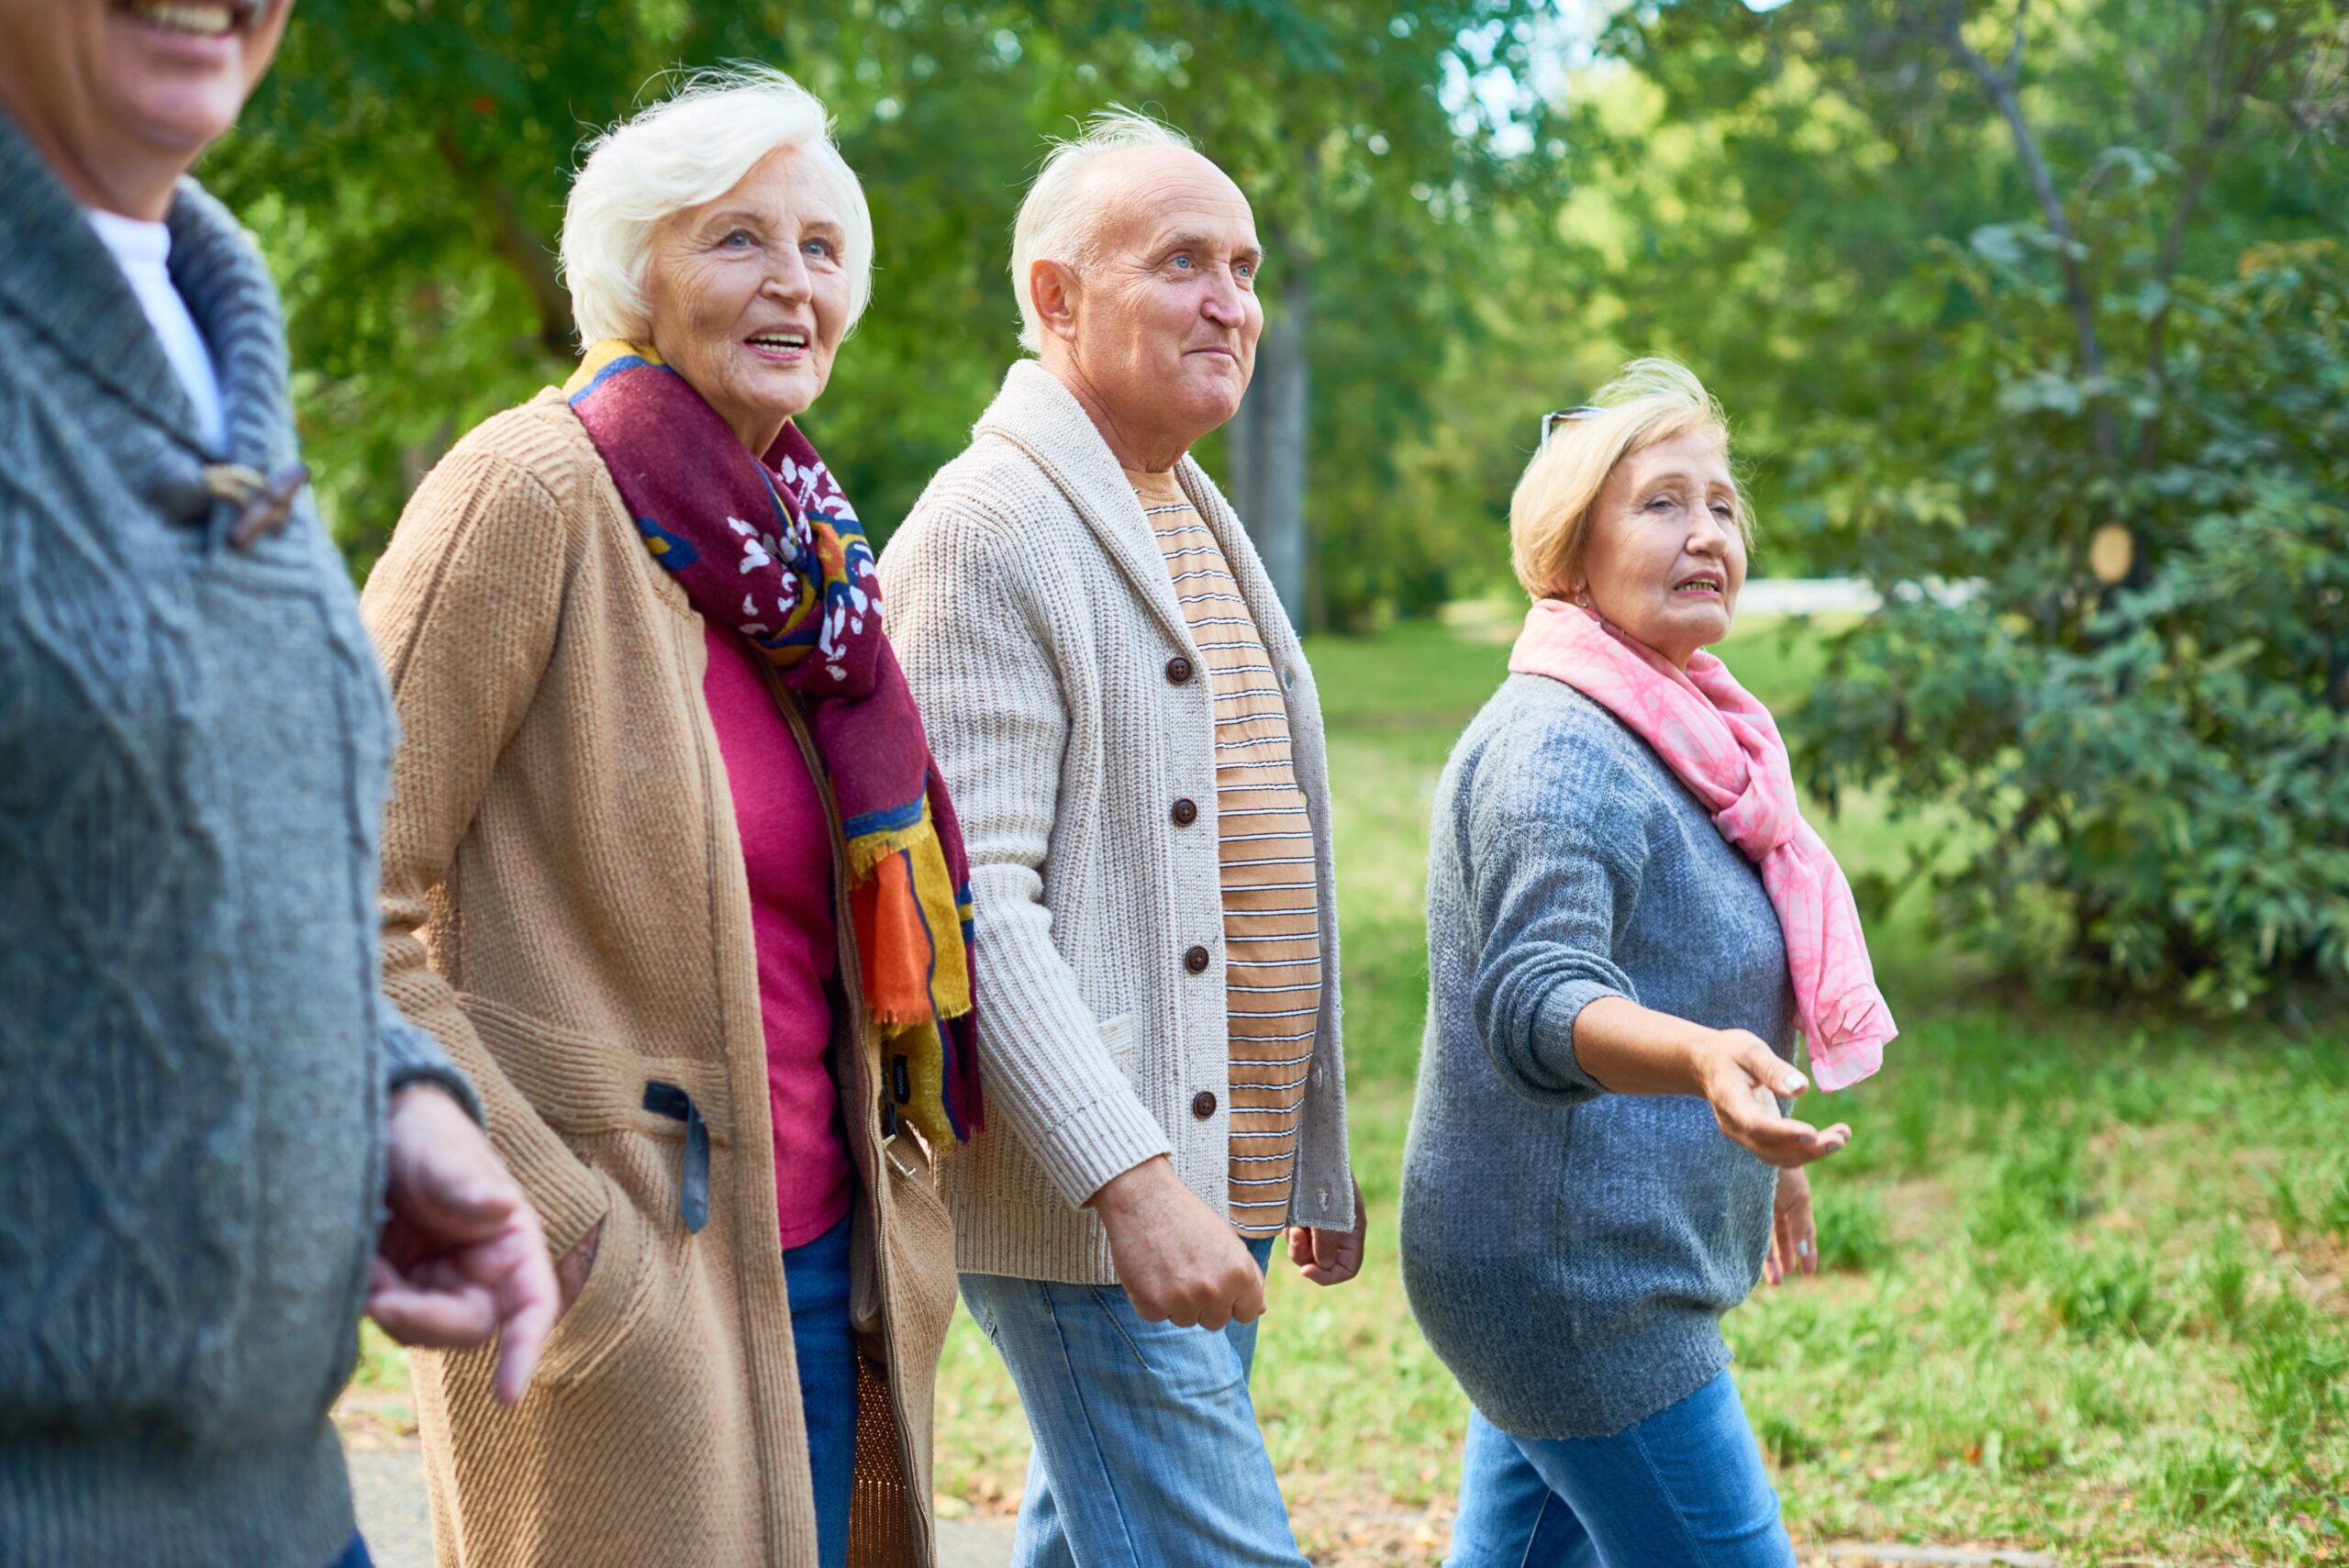 Elderly group walking in a park